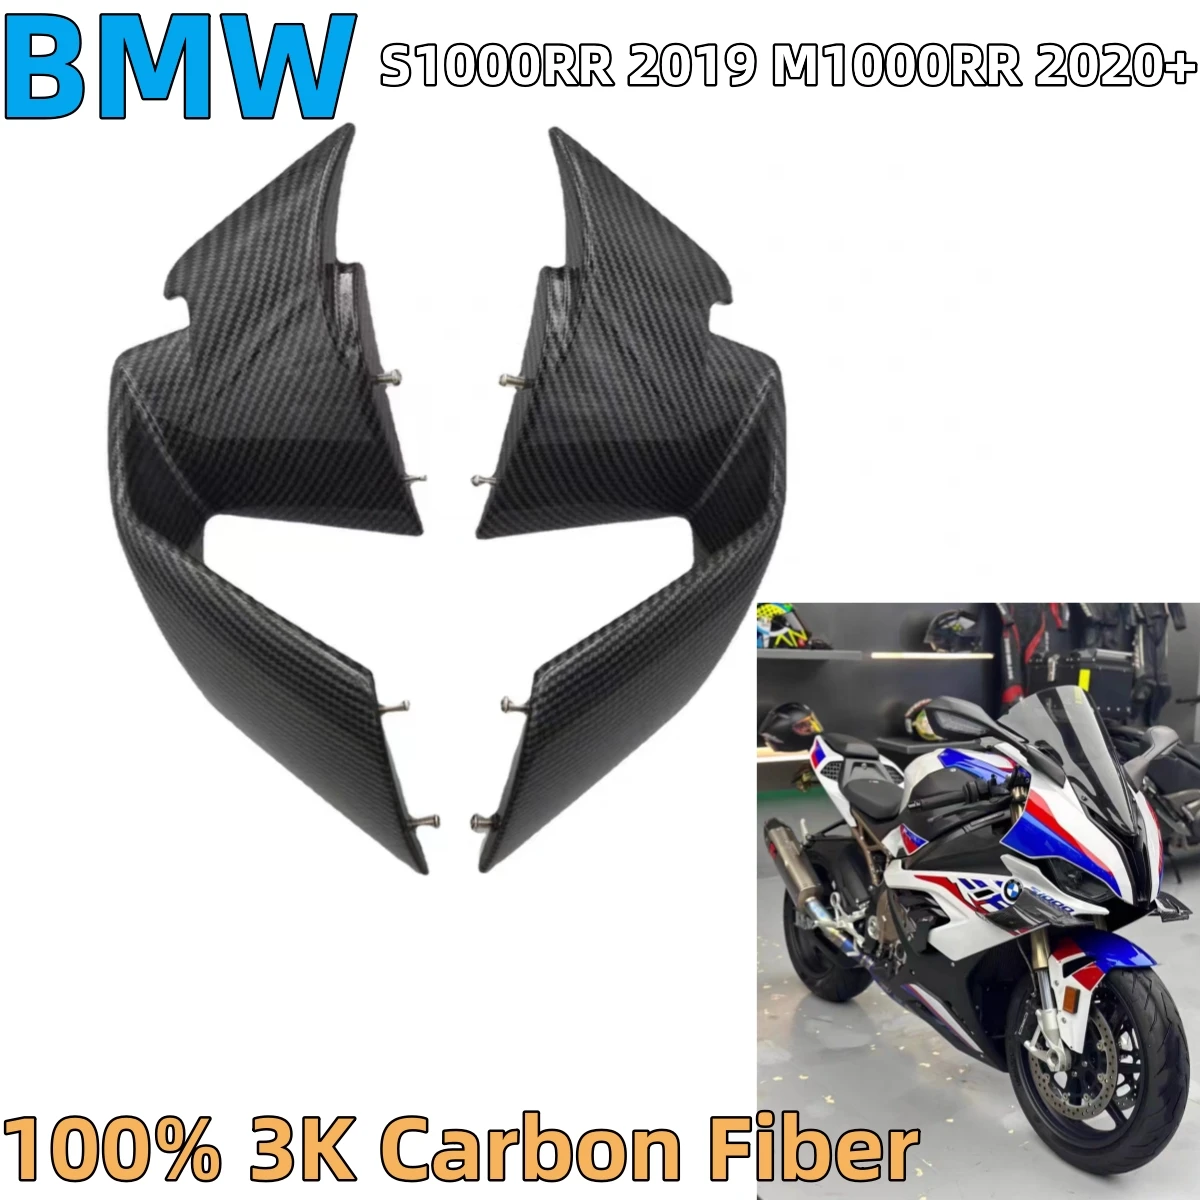 

Детали для кузова мотоцикла из углеродного волокна 3K, комплект обтекателей боковых крыльев, крылья для BMW S1000RR 2019 M1000RR 2020 2021 2022, крылья